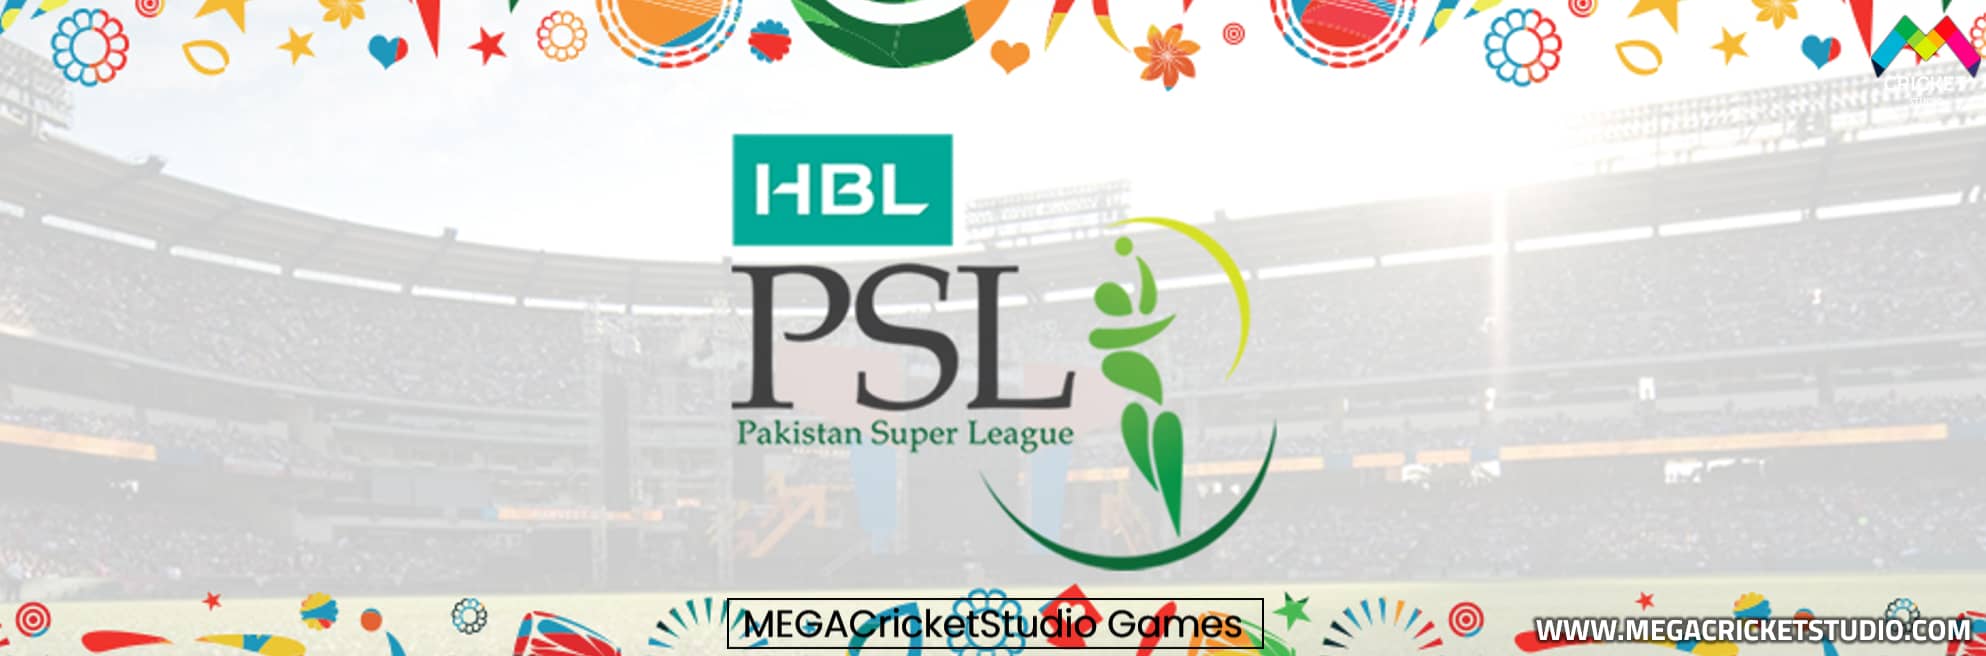 PSL2 Pakistan Super League 2017 Patch for EA Cricket 07